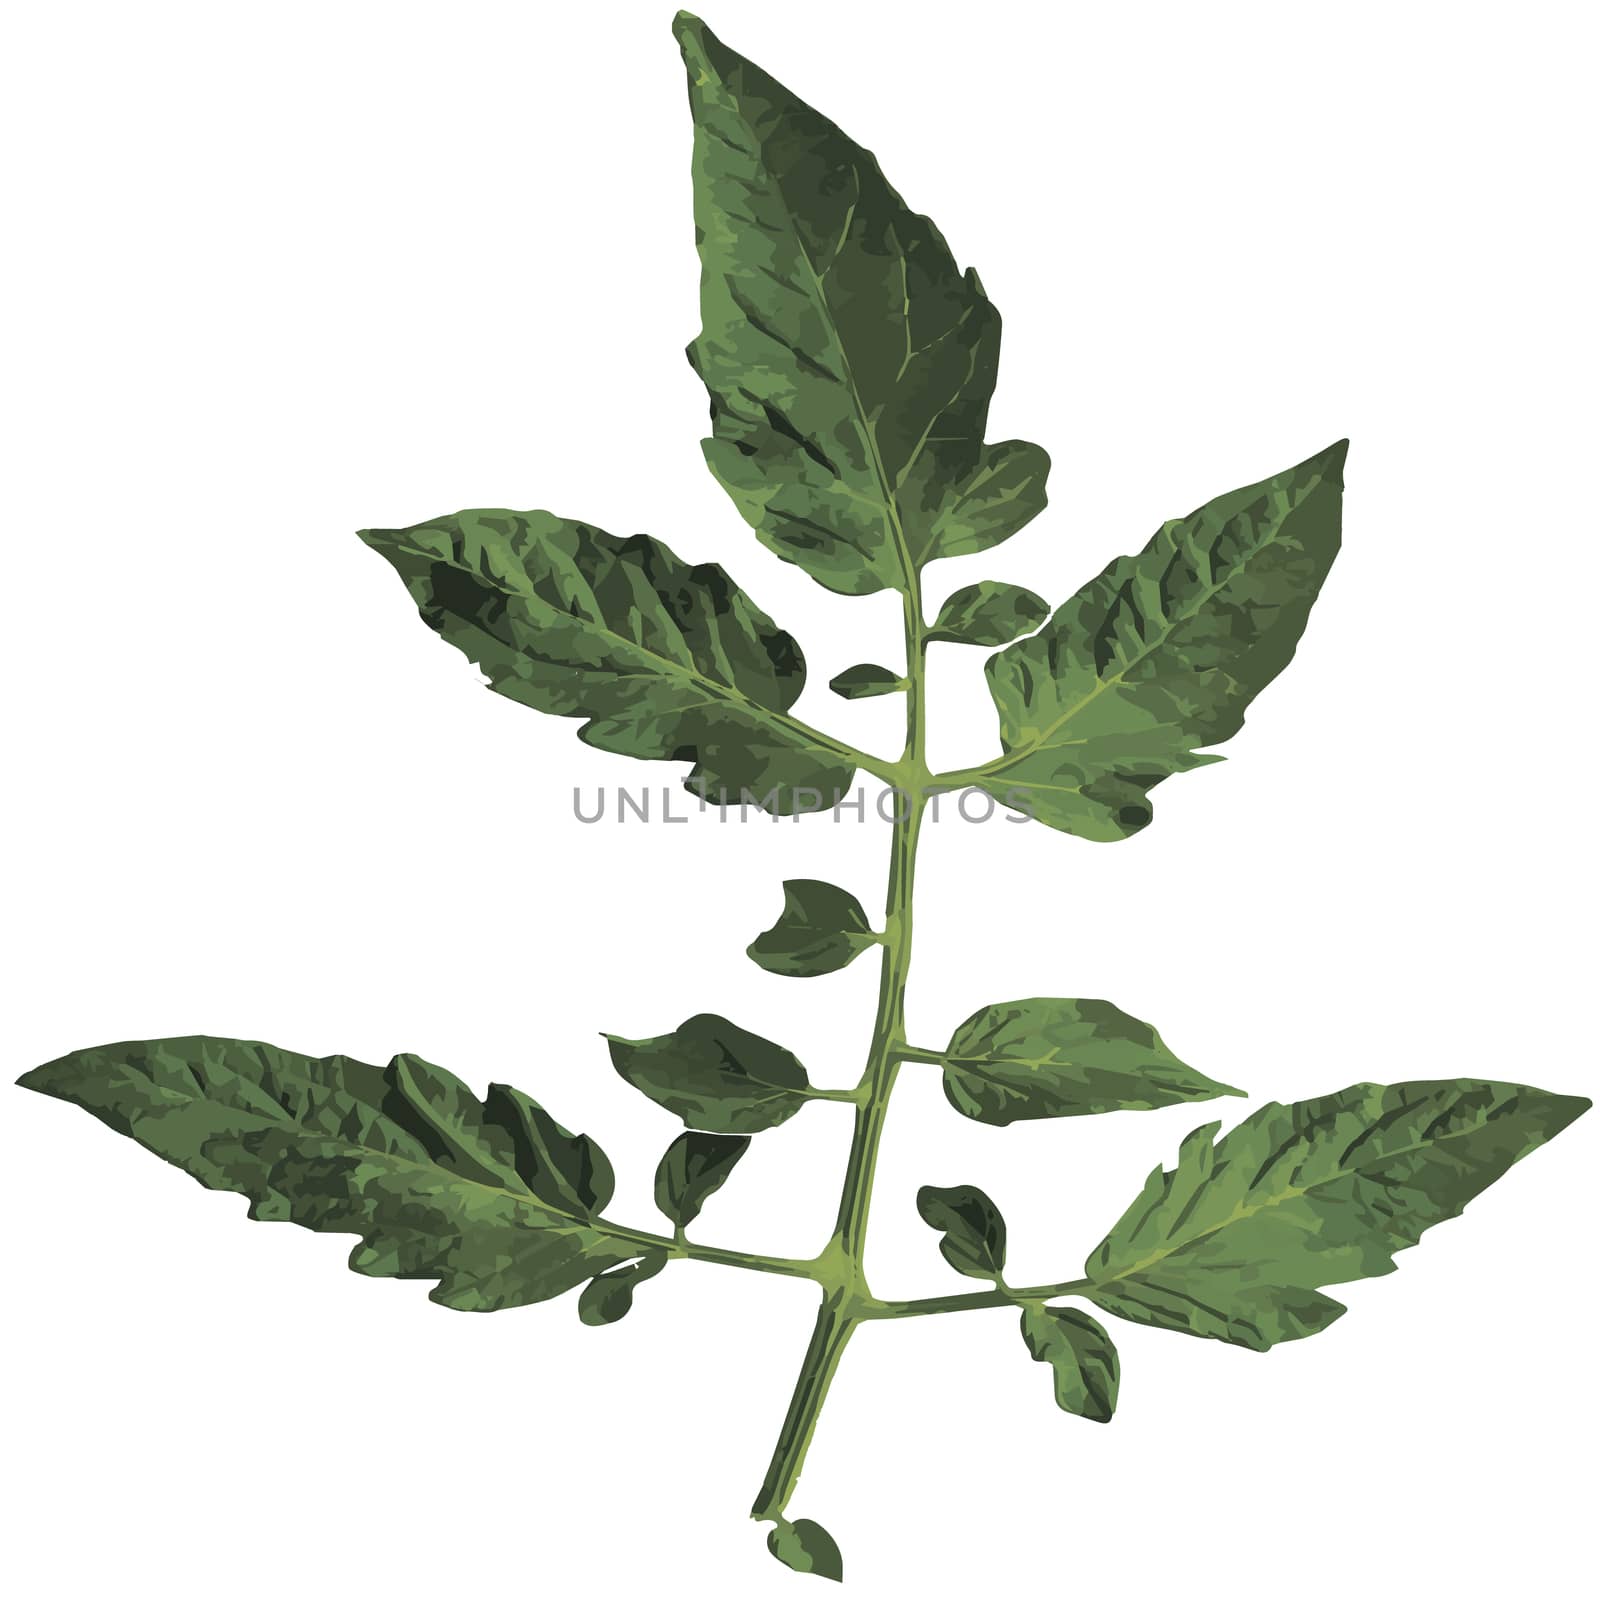 Tomato leaf isolated on white background. illustration